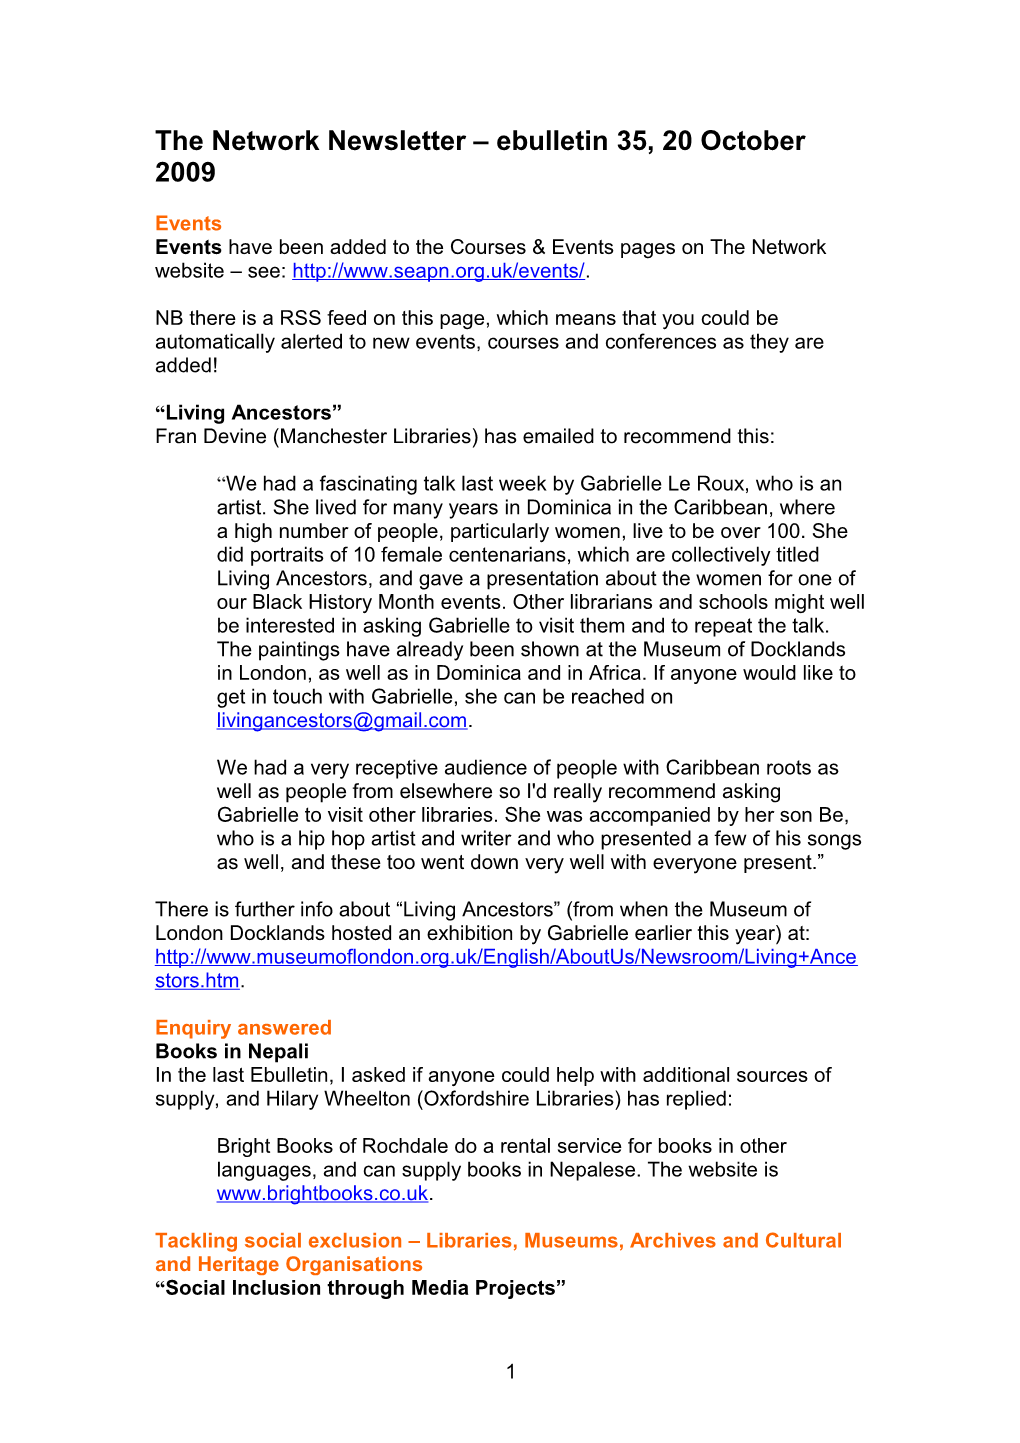 The Network Newsletter Ebulletin 1, 14 April 2008